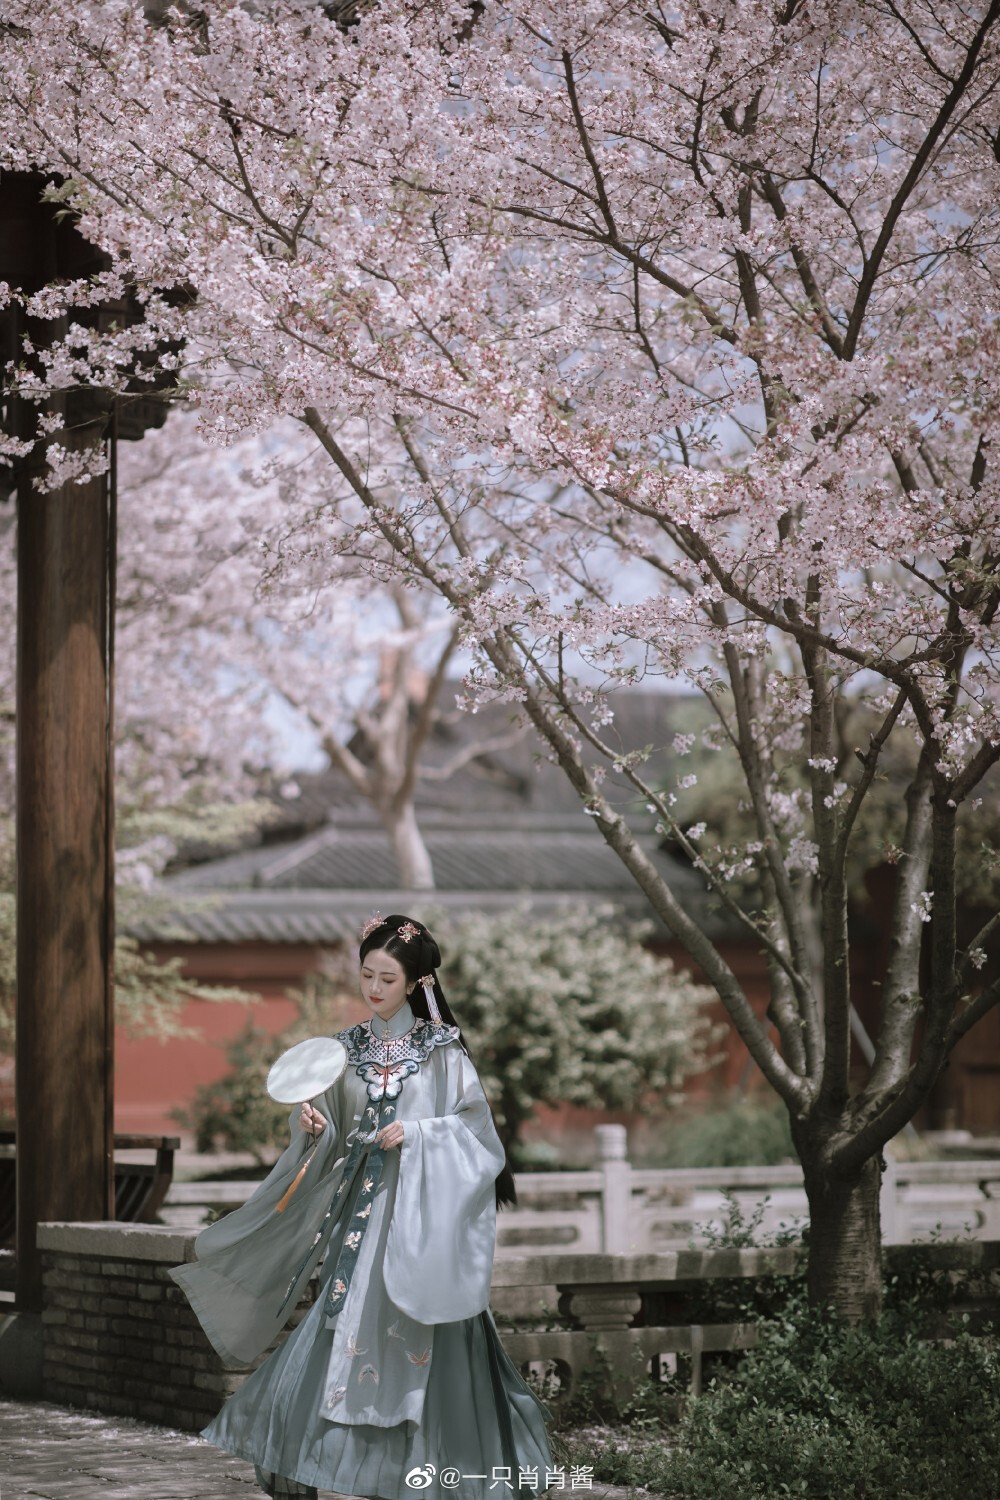 「客片」
四月初的上海樱花太美了
摄影@一只肖肖酱
#杭州约拍##汉服# ​